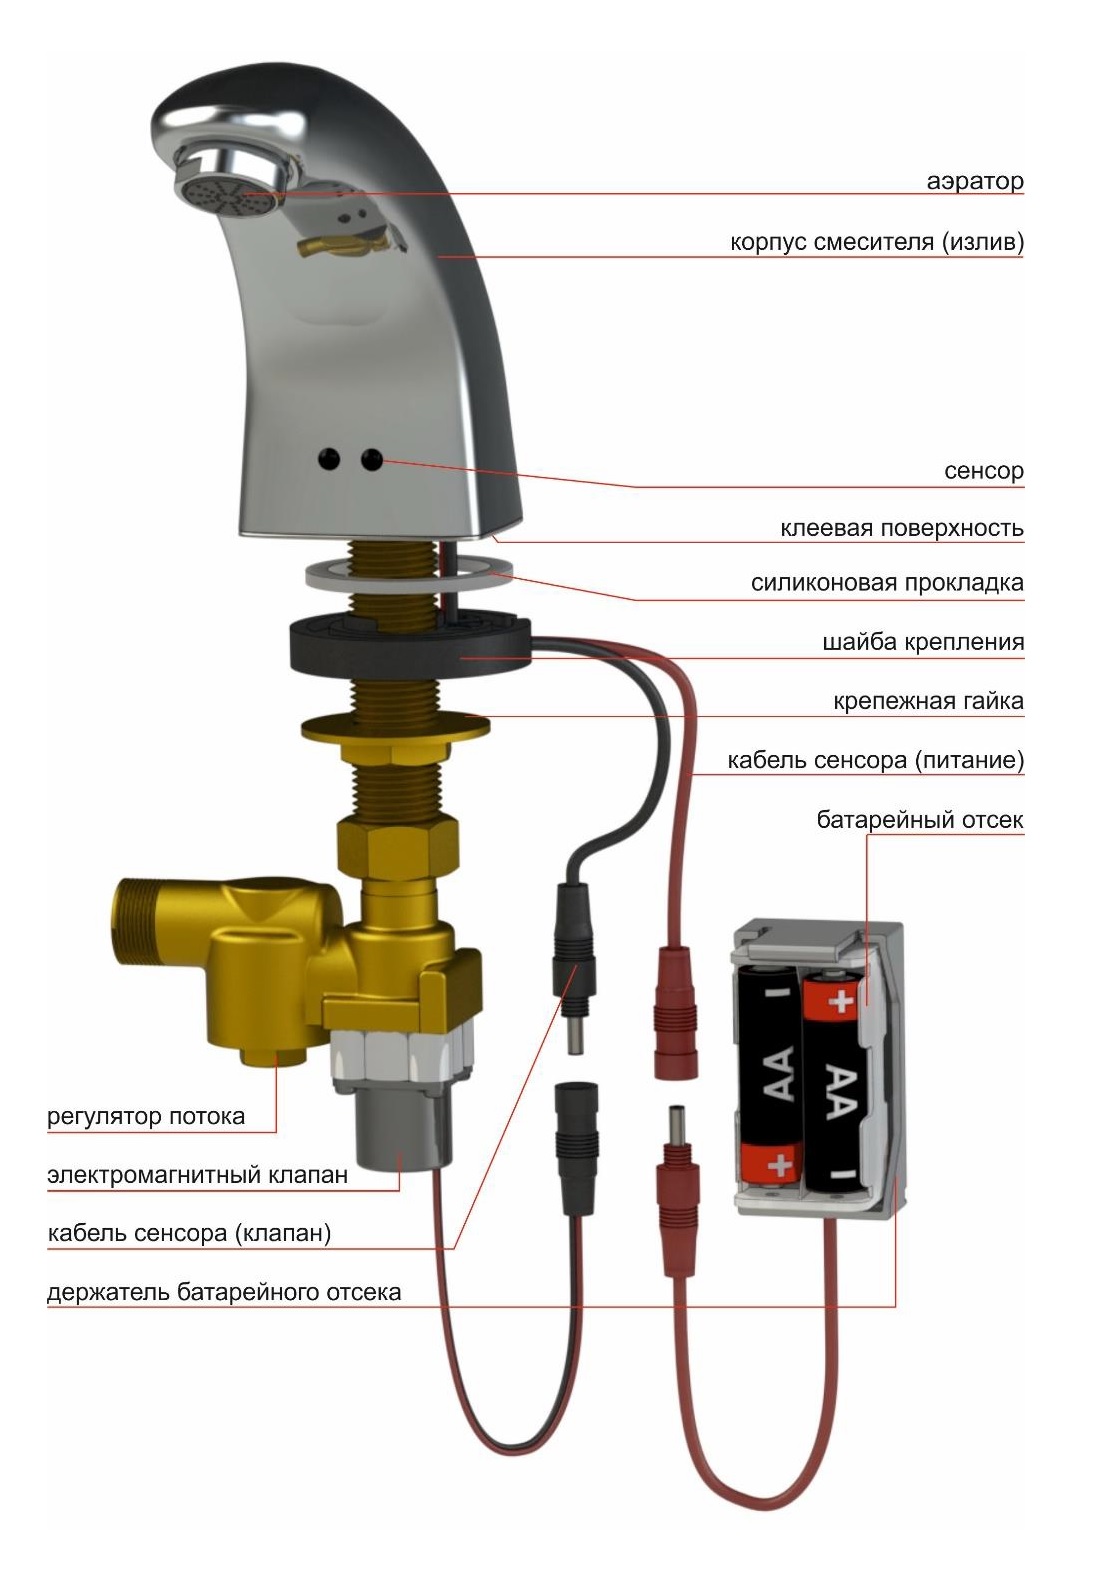 Automatic faucet KR5152V-DC